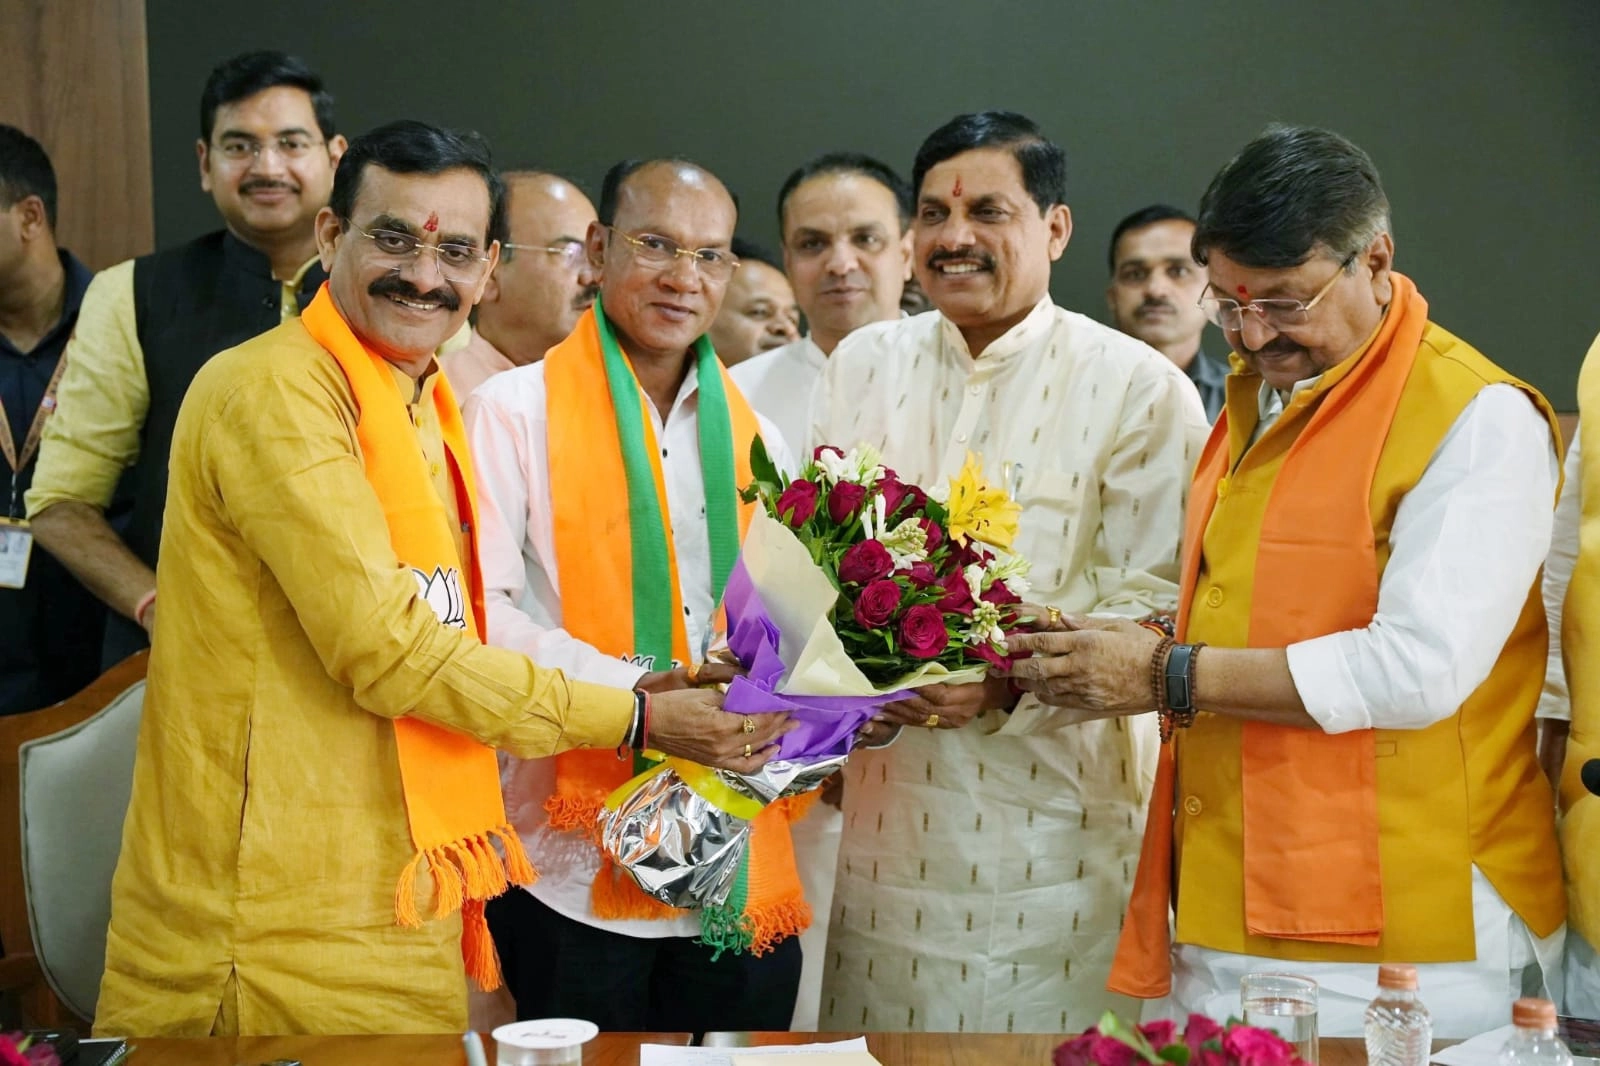 छिंदवाड़ा में कमलनाथ को बड़ा झटका, अमरवाड़ा से कांग्रेस विधायक कमलेश शाह भाजपा में शामिल - Congress MLA Kamlesh Shah from Amarwada Assembly seat of Chhindwara joins BJP.